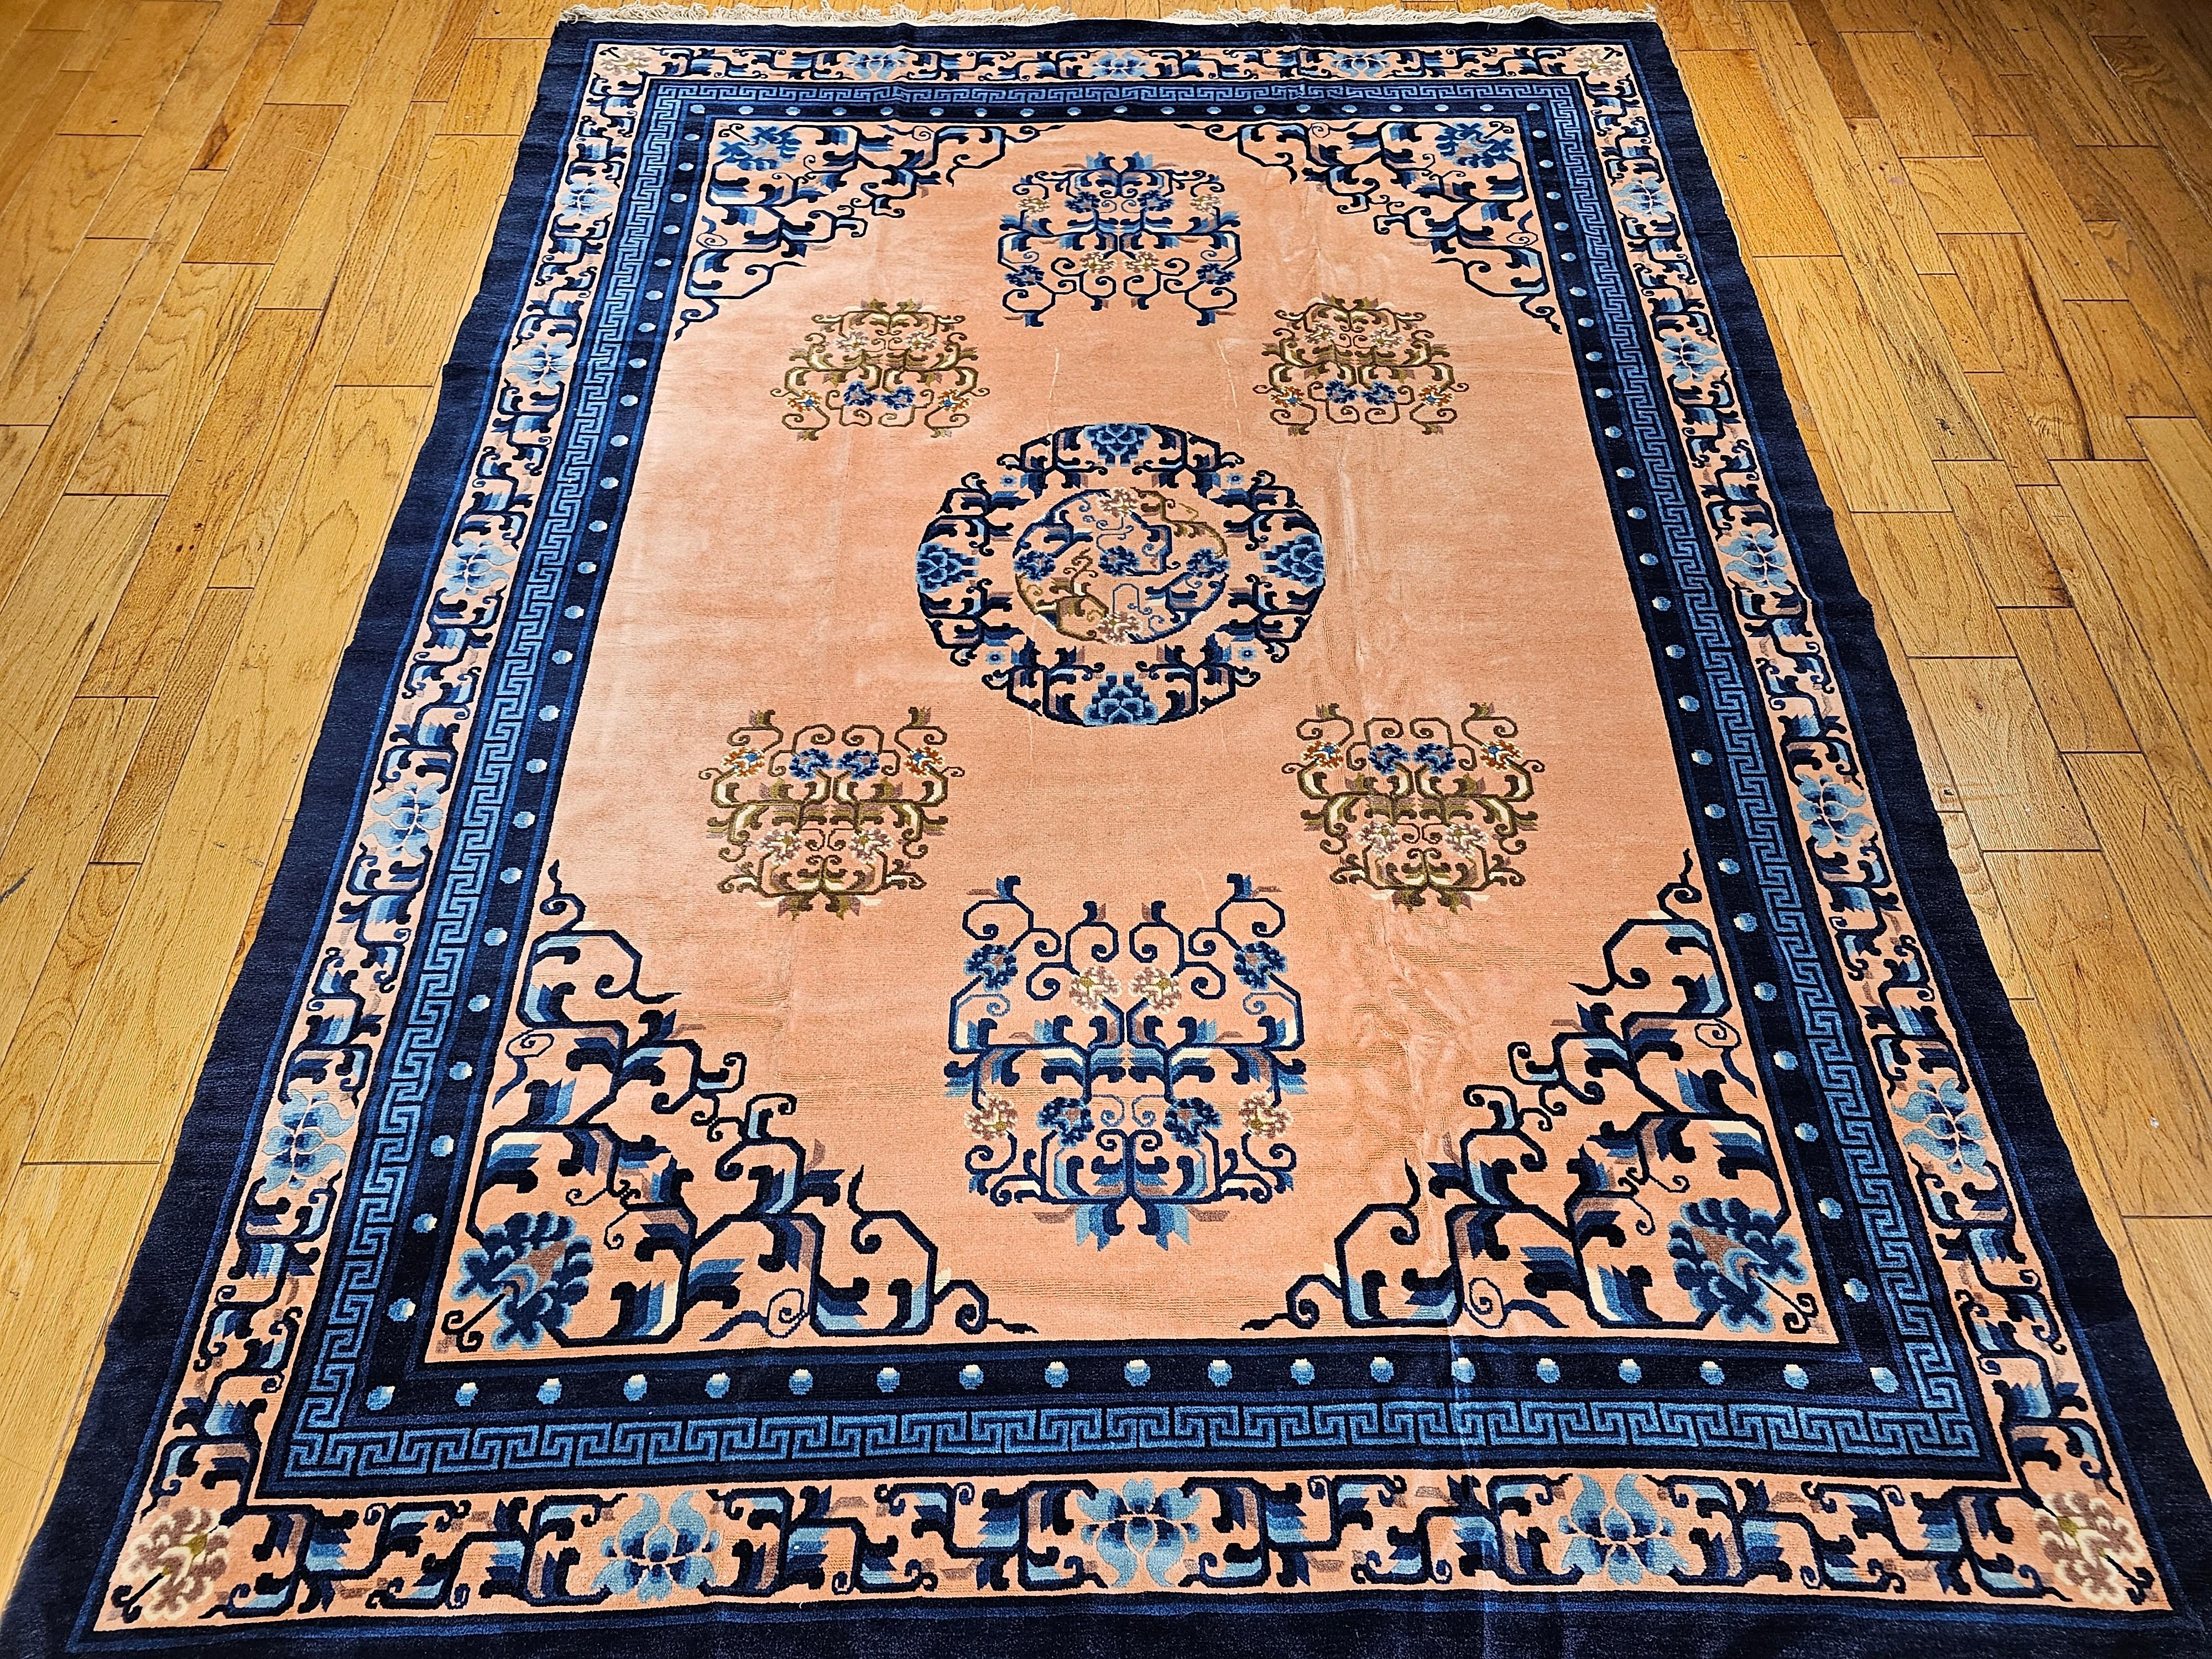 Ein schöner chinesischer Teppich im Art-Déco-Stil aus der Mitte des 19. Jahrhunderts mit einem blassrosa oder apricotfarbenen Feld mit einer wunderschönen marineblauen und französisch-blauen Gittermuster-Bordüre. Das Design dieses Teppichs ähnelt